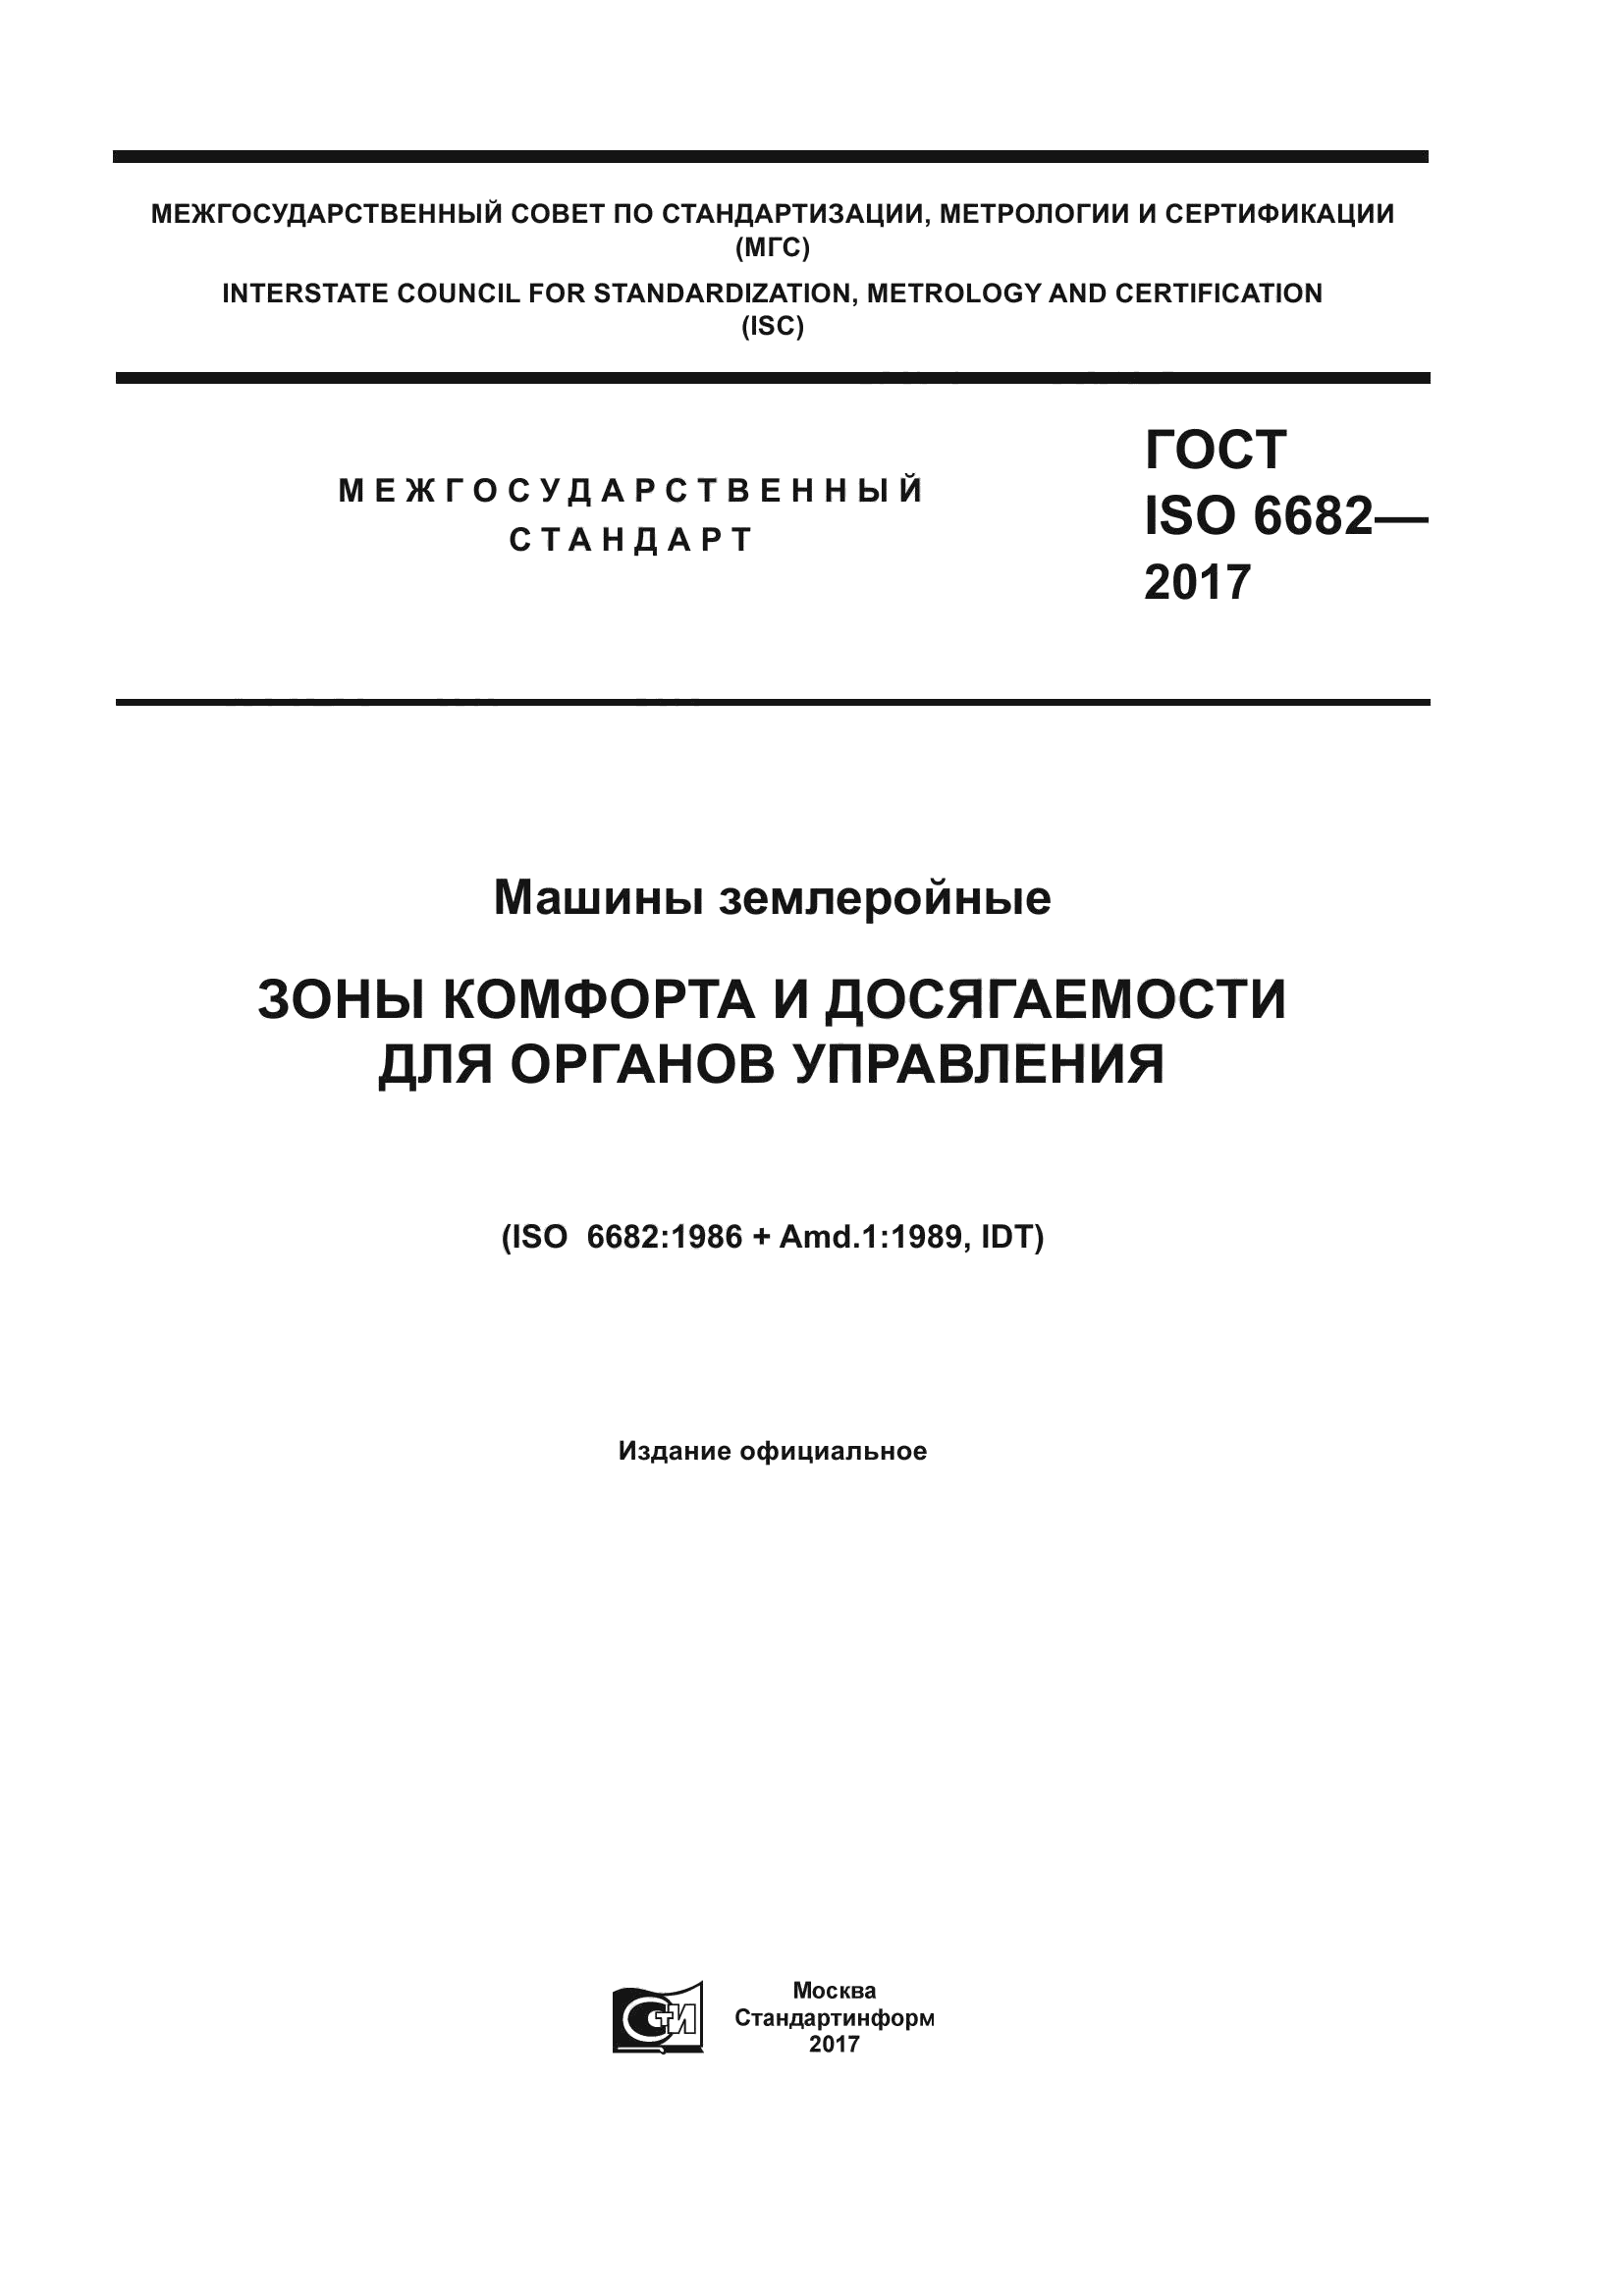 ГОСТ ISO 6682-2017